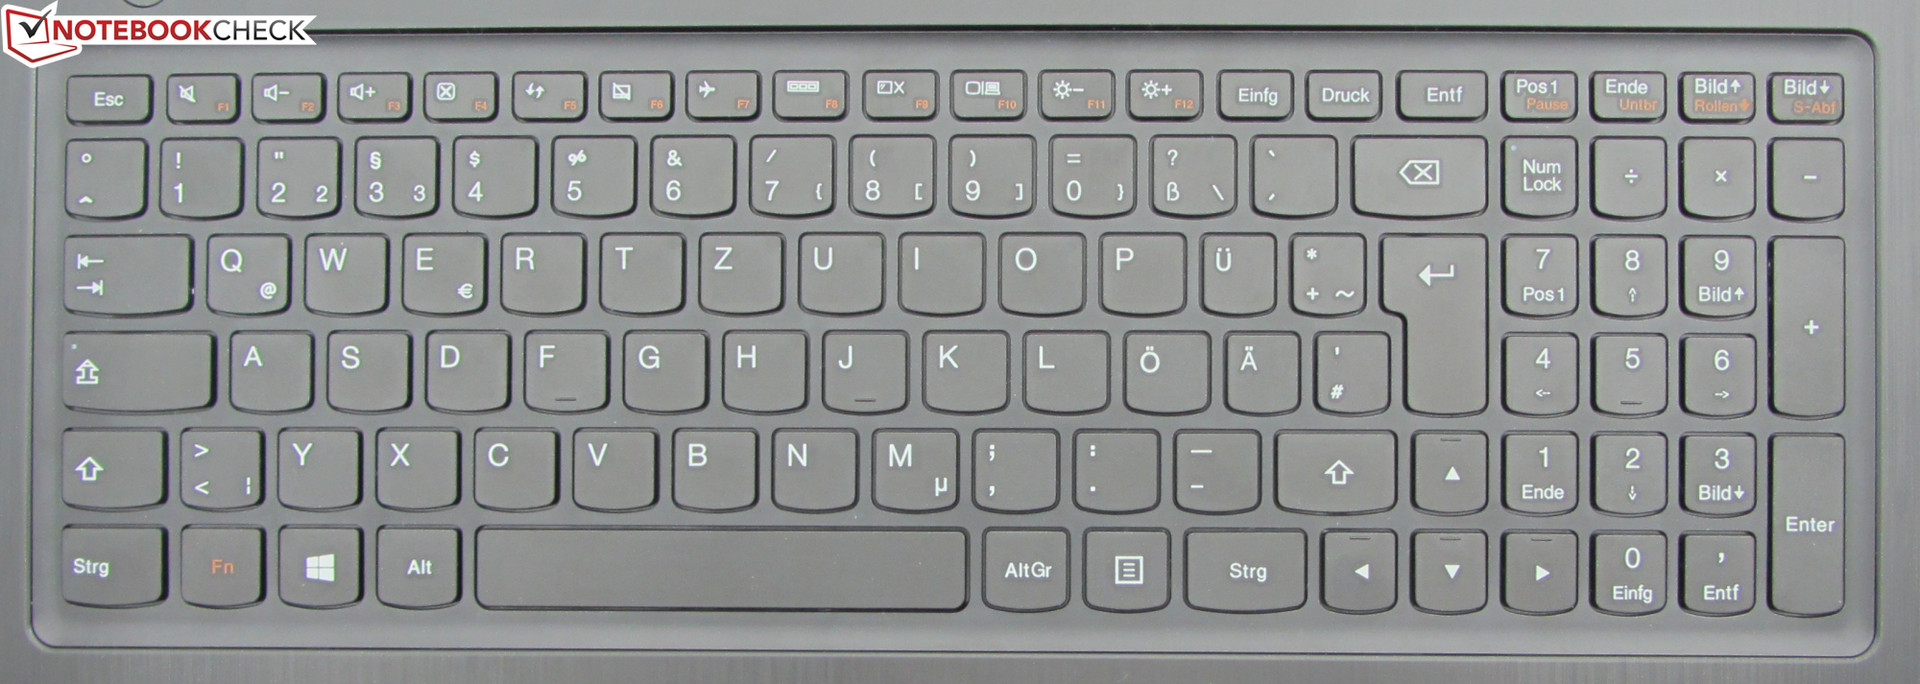 Как Проверить Контур Питания Ноутбука Lenovo G580